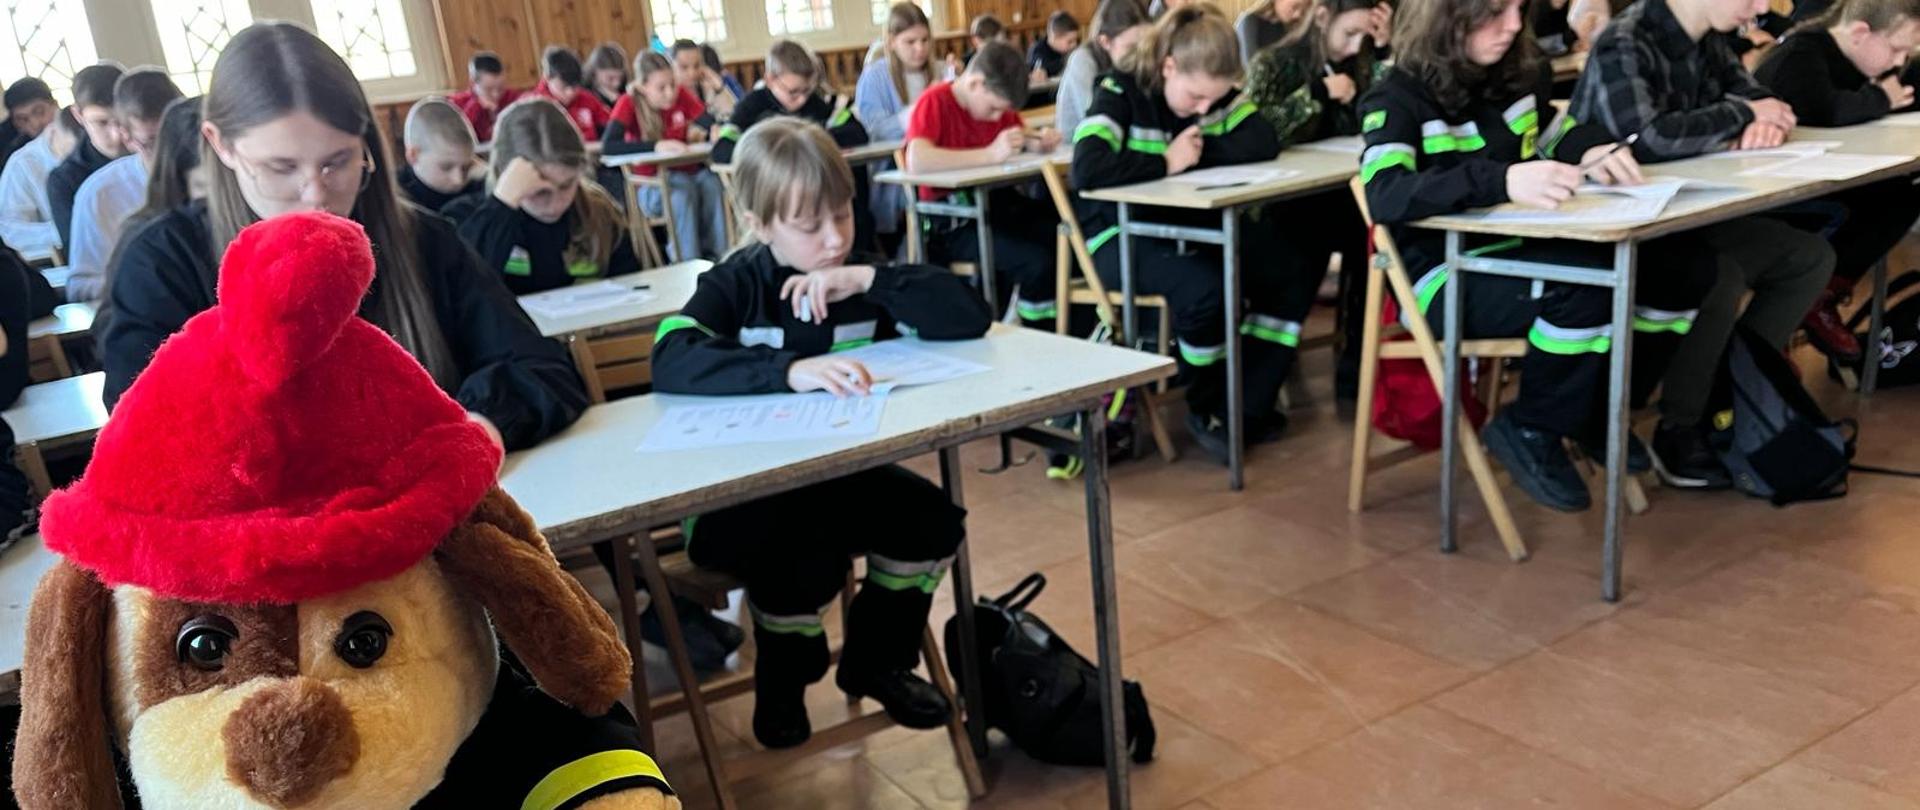 Na pierwszym planie maskotka strażak w oddali widać siedzące przy stolikach w trzech rzędach dzieci, które rozwiązują testy. 